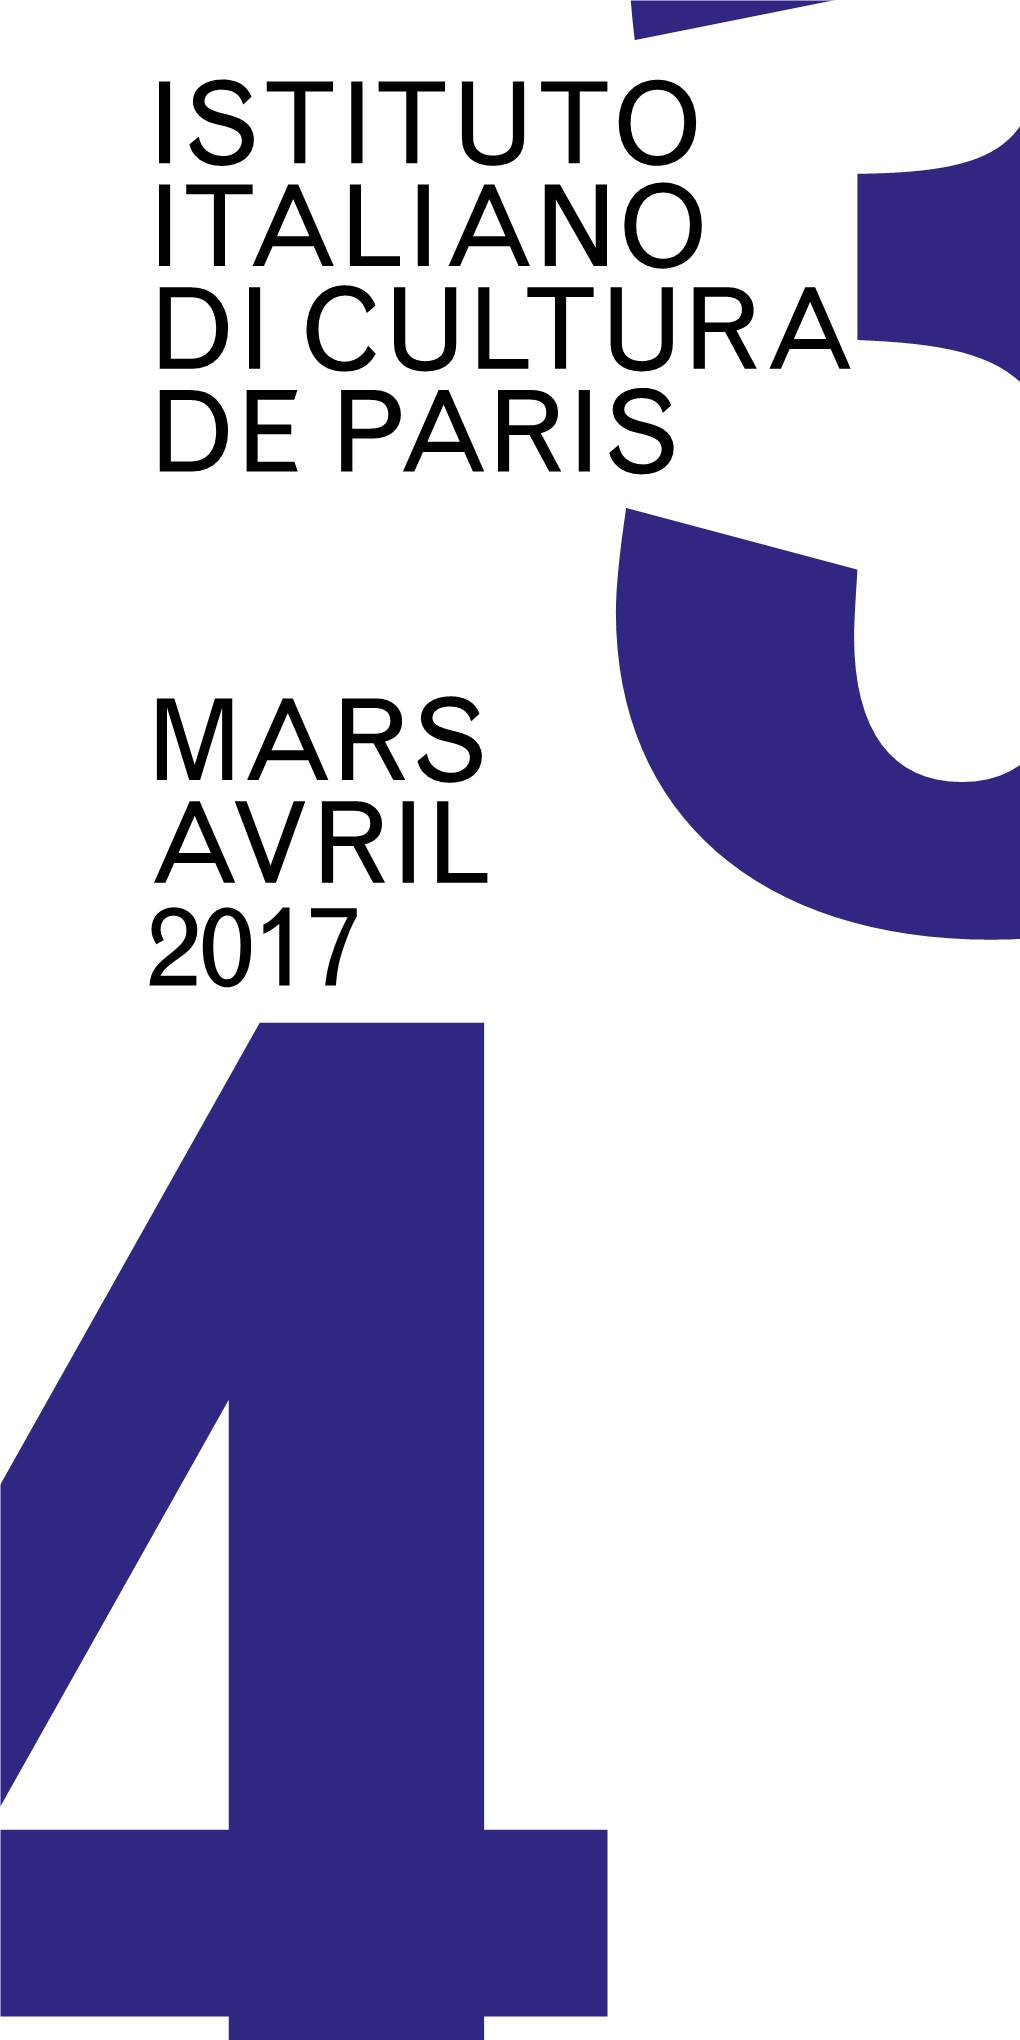 3Istituto Italiano Di Cultura De Paris Mars Avril 2017